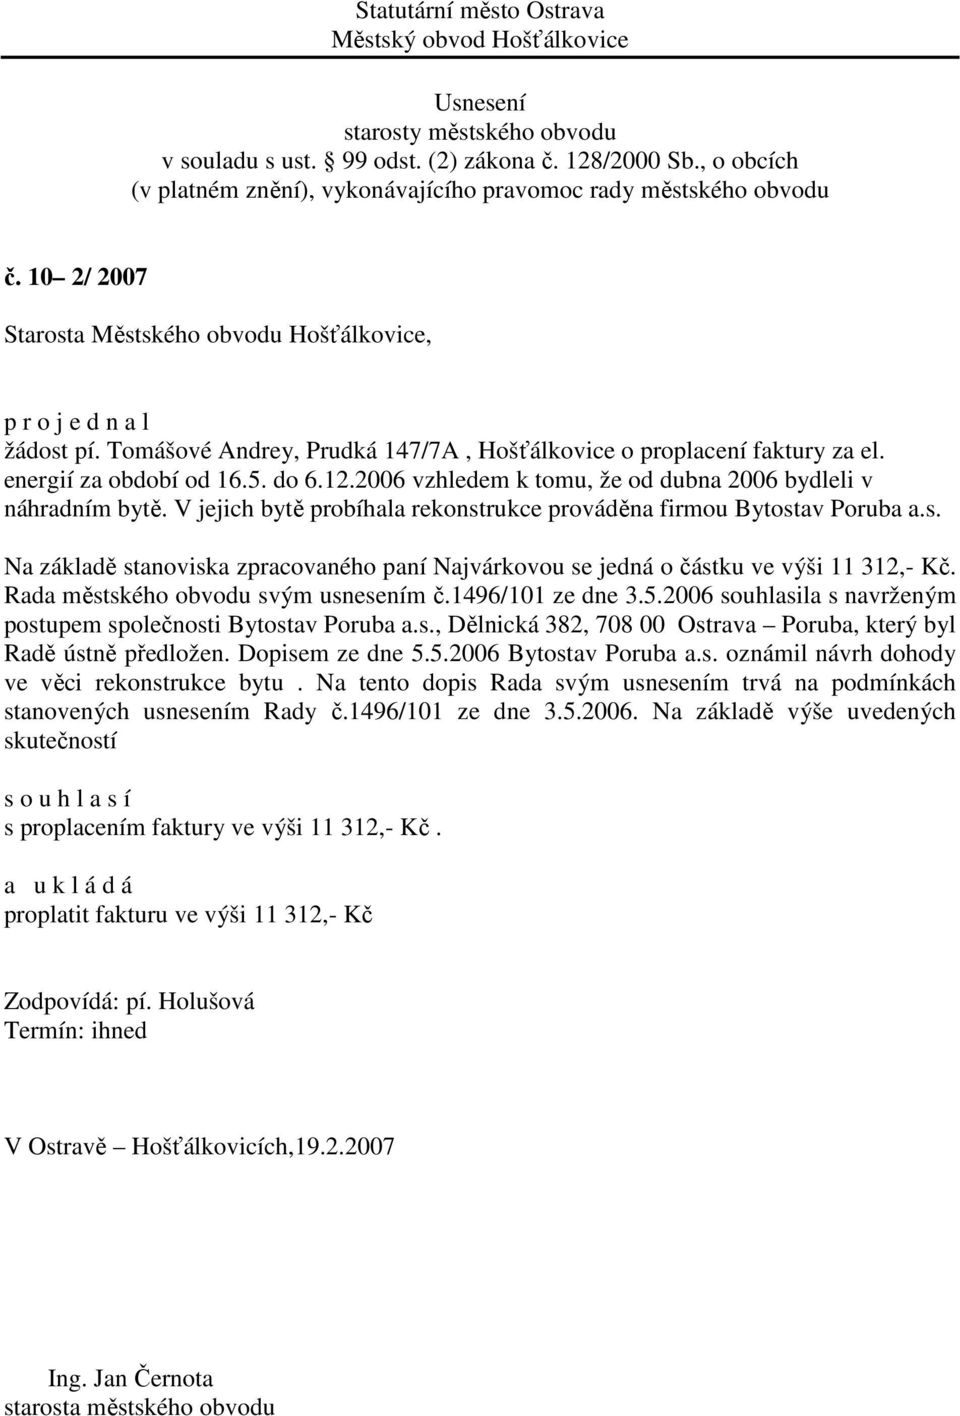 Rada městského obvodu svým usnesením č.1496/101 ze dne 3.5.2006 souhlasila s navrženým postupem společnosti Bytostav Poruba a.s., Dělnická 382, 708 00 Ostrava Poruba, který byl Radě ústně předložen.